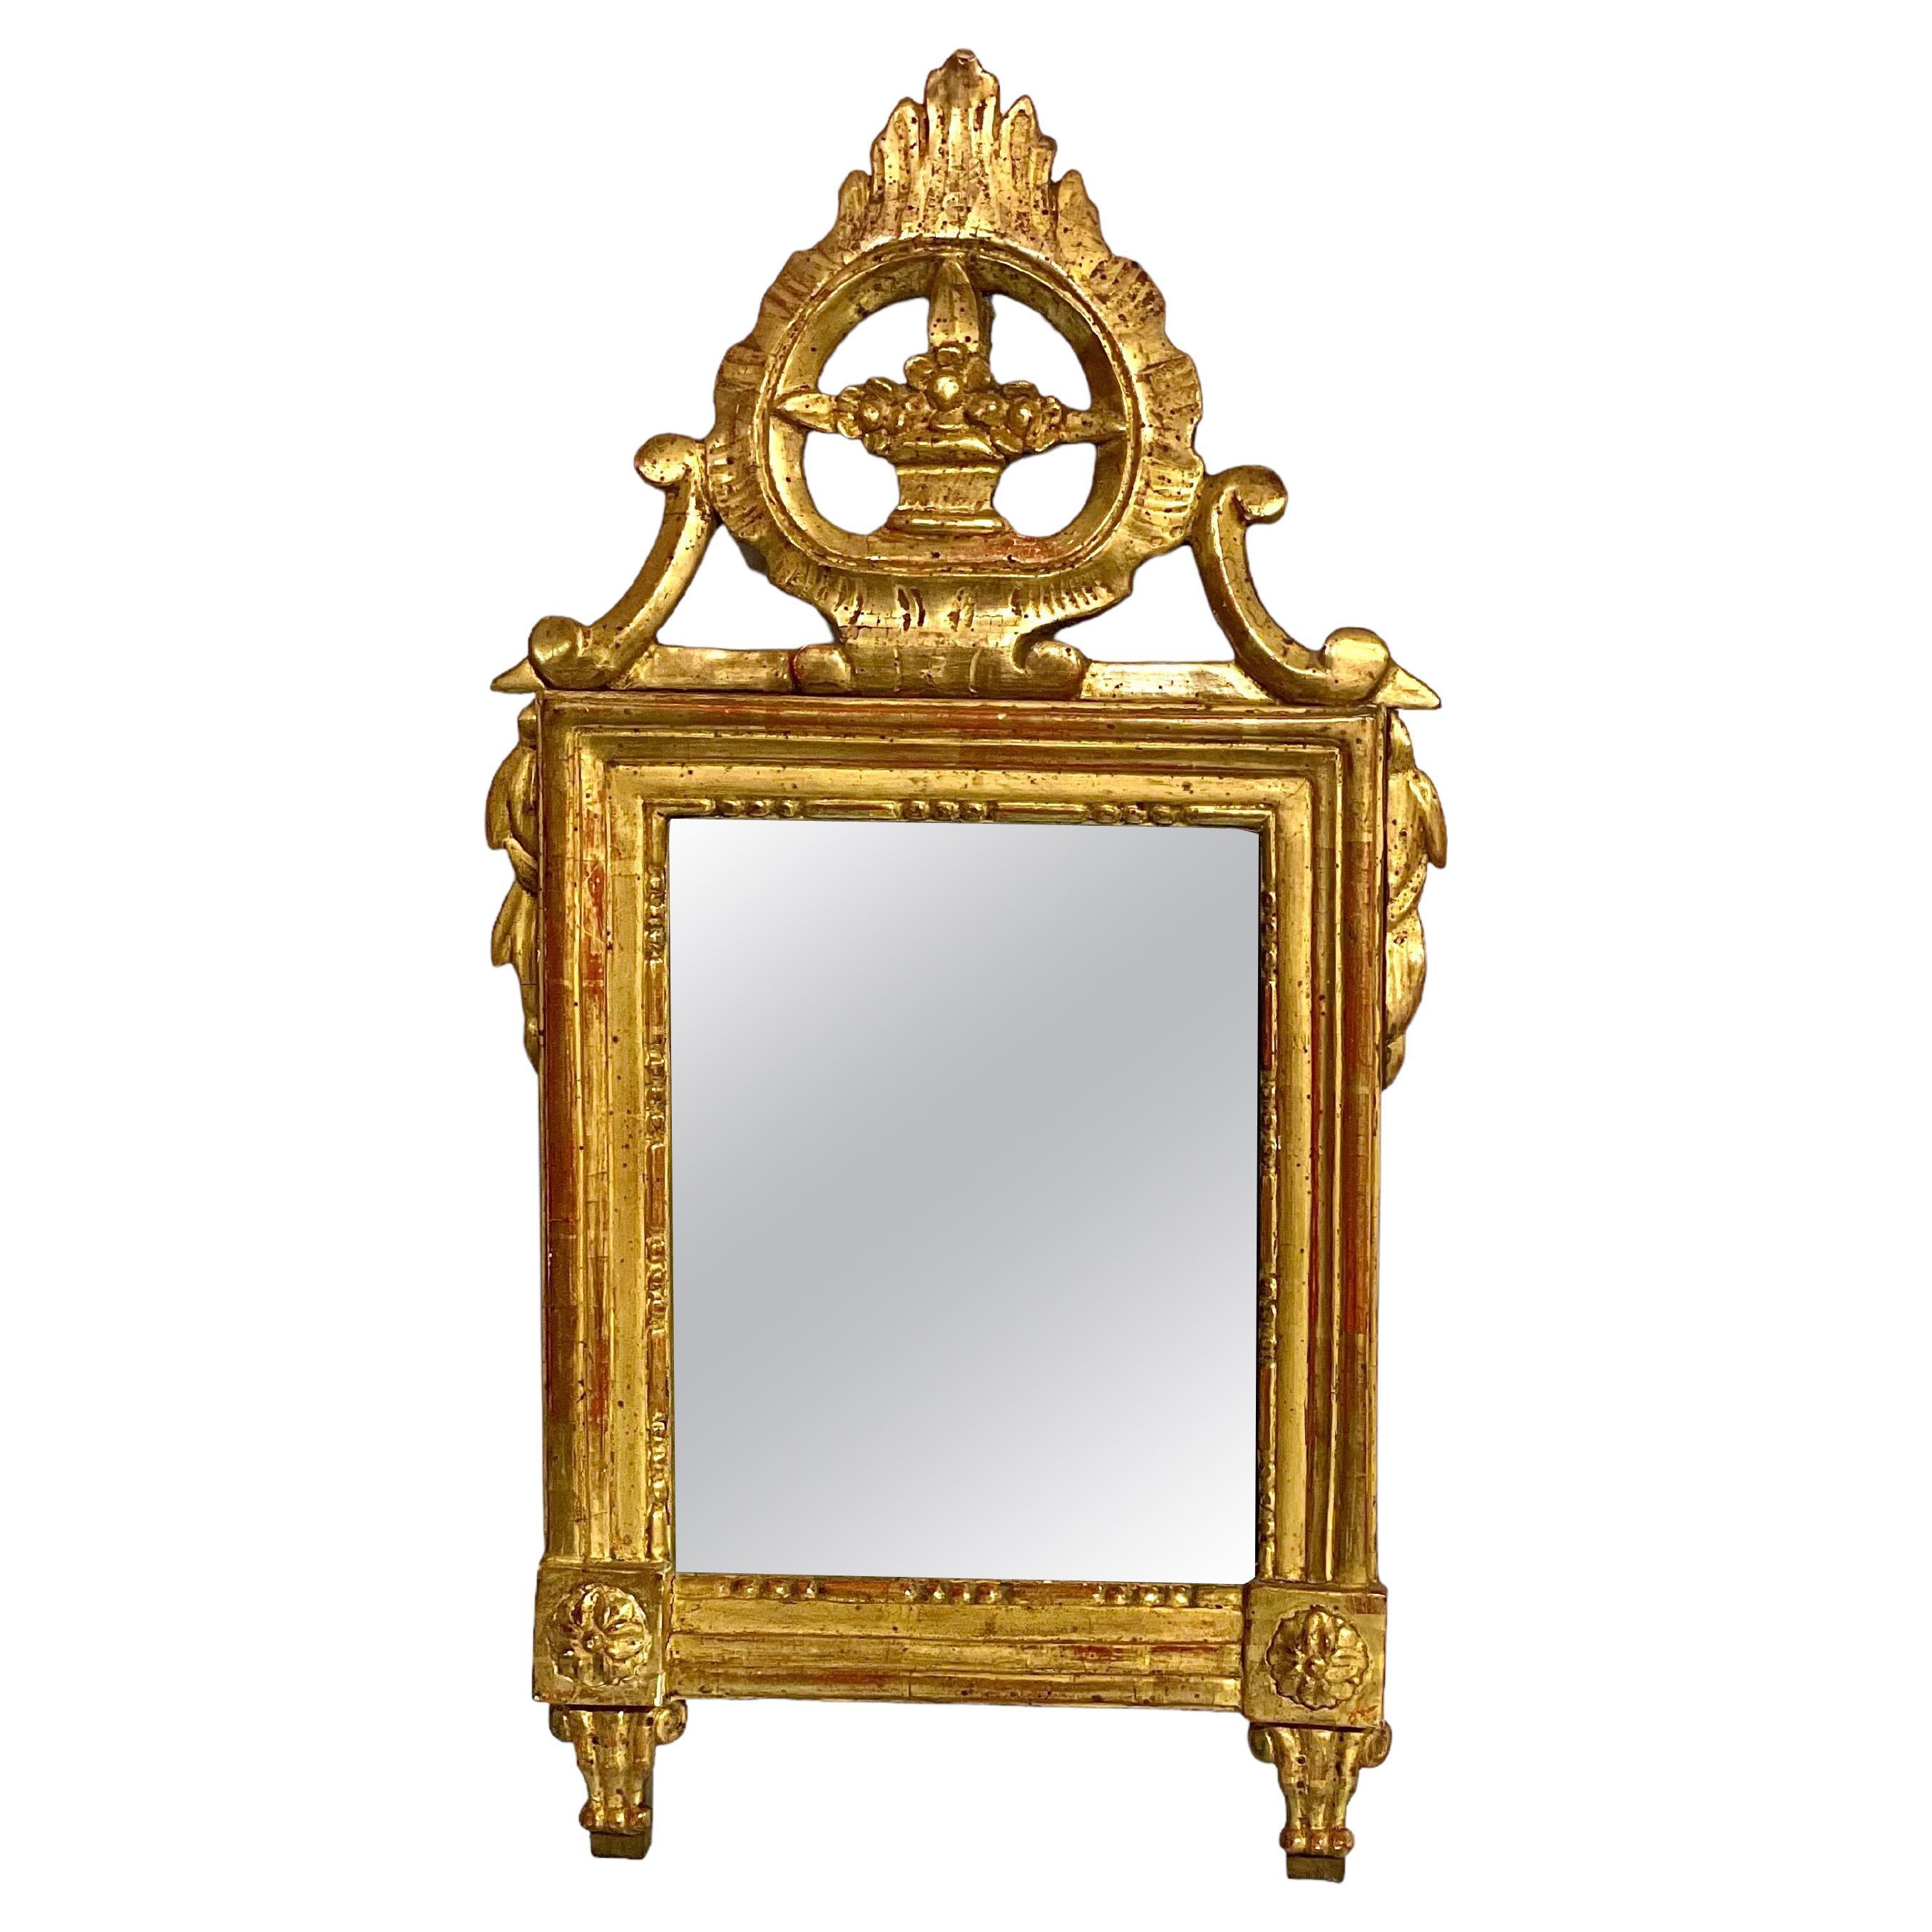 Miroir en bois doré d'époque Louis XVI du XVIIIe siècle